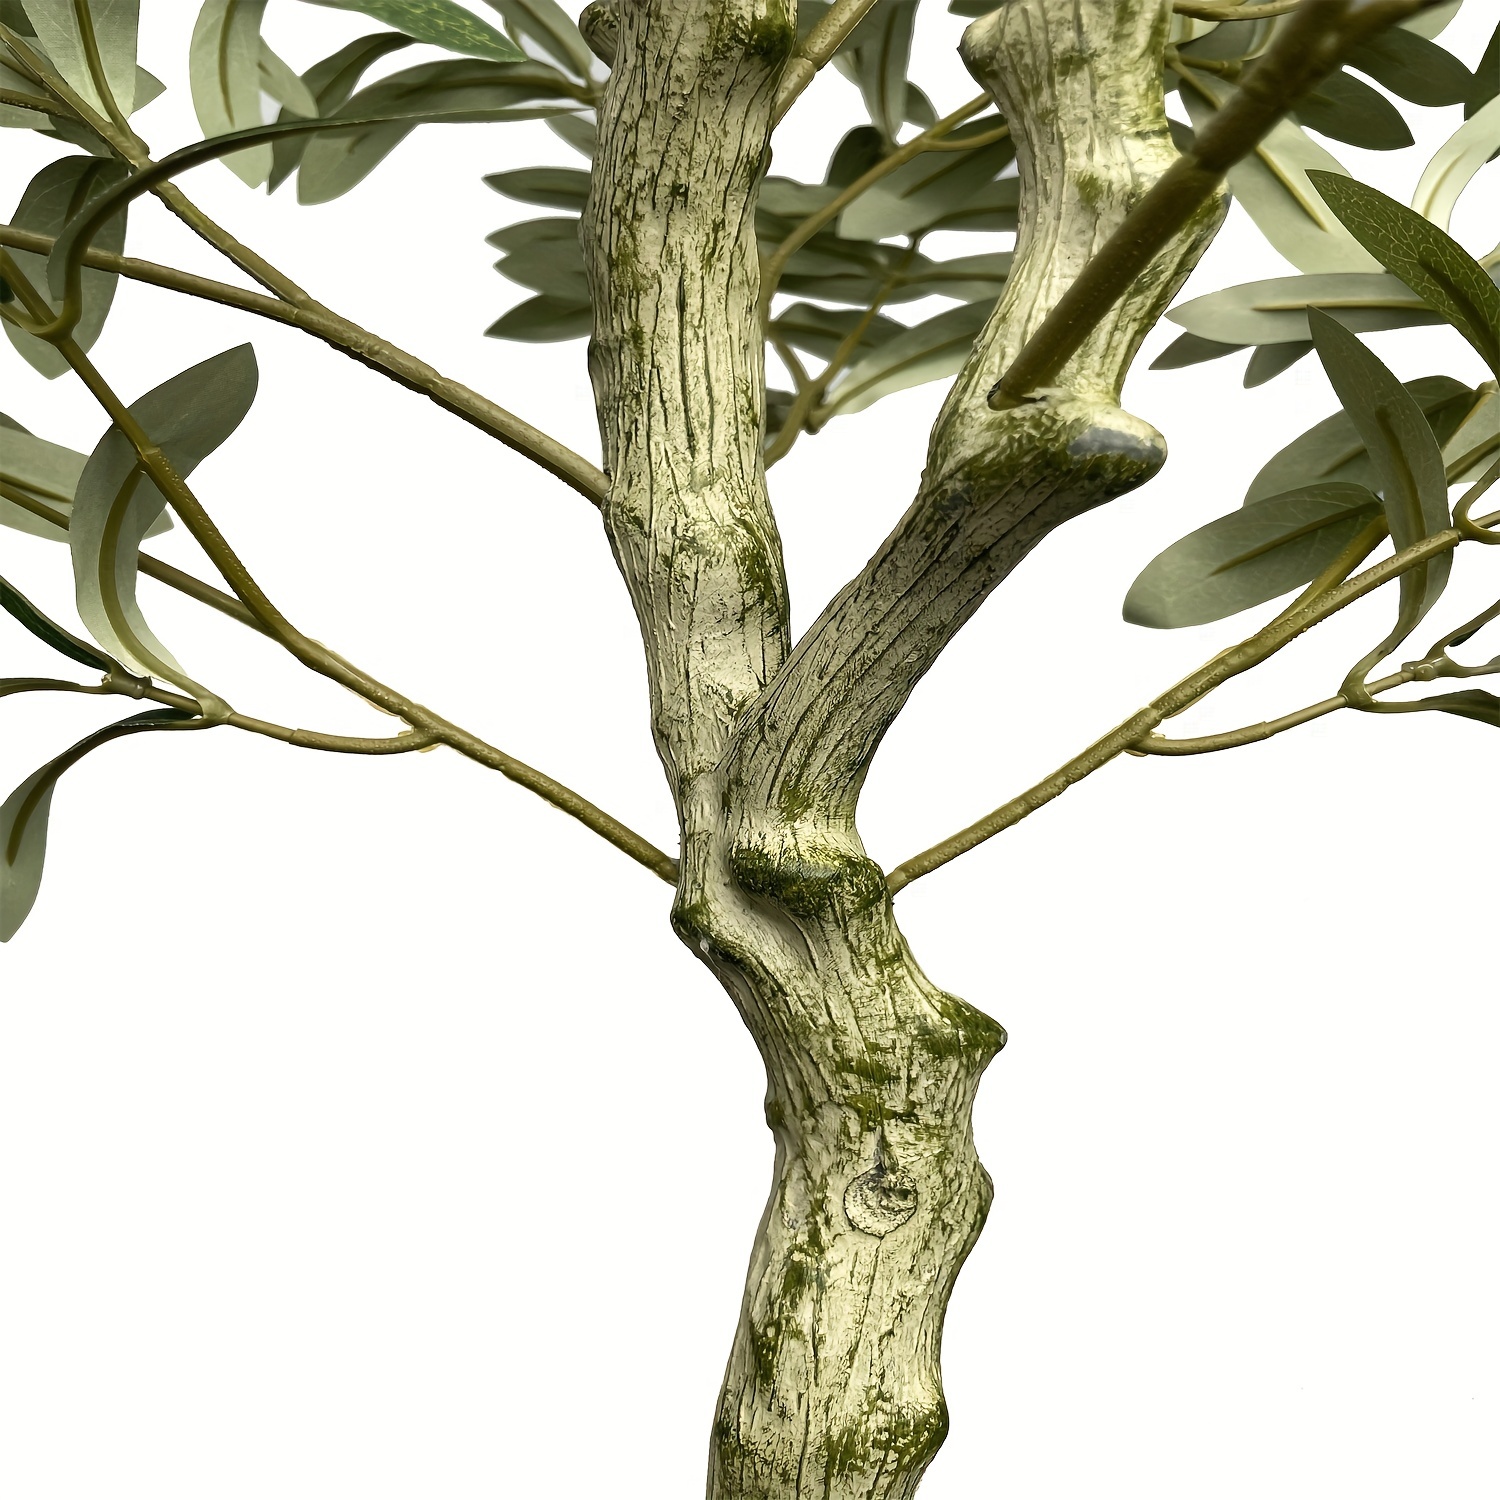 Fopamtri Ulivo Finto da Interno 120cm Piante Finte Olivo Artificiale con  Tronchi Natural, Olive Tree plant Artificial in Vaso per Casa Camera da  Letto